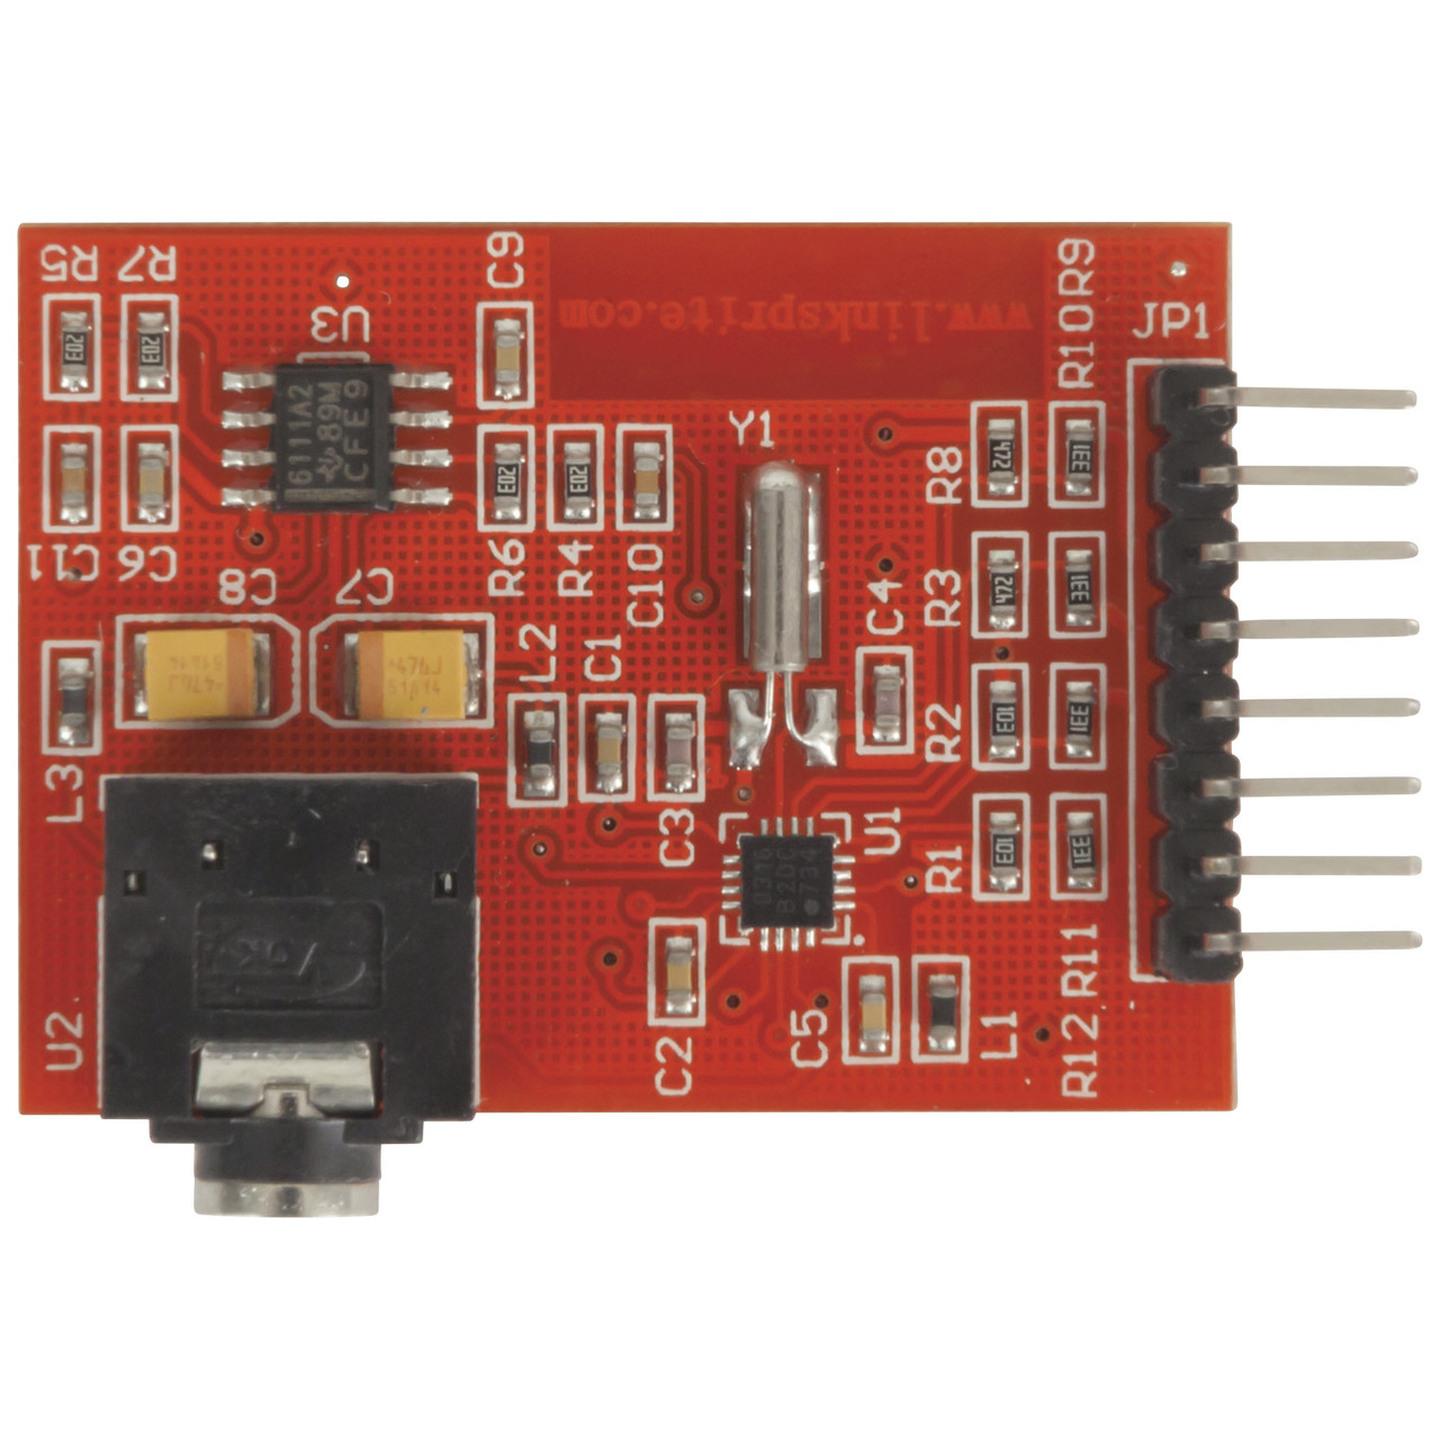 Si4703 FM Tuner Breakout Board for Arduino